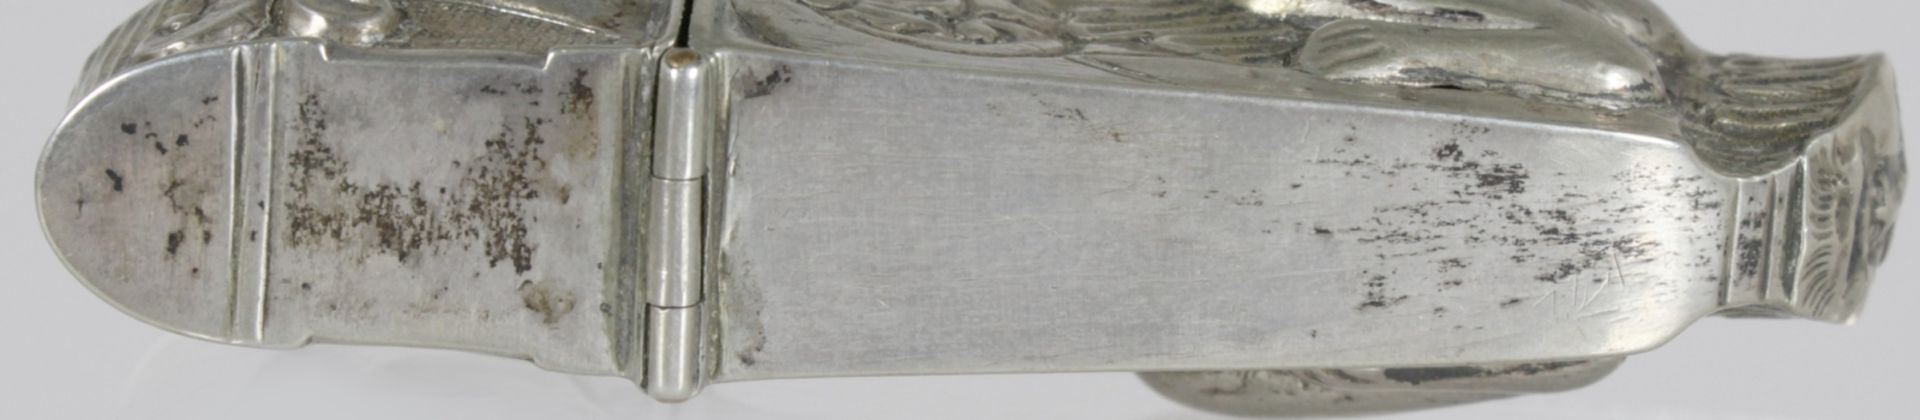 Nadelbüchse, Schwäbisch Gmünd, 18. Jh., Silber, Meister: wohl Johann Michael Knoll,erwähnt 1771 - Bild 6 aus 6